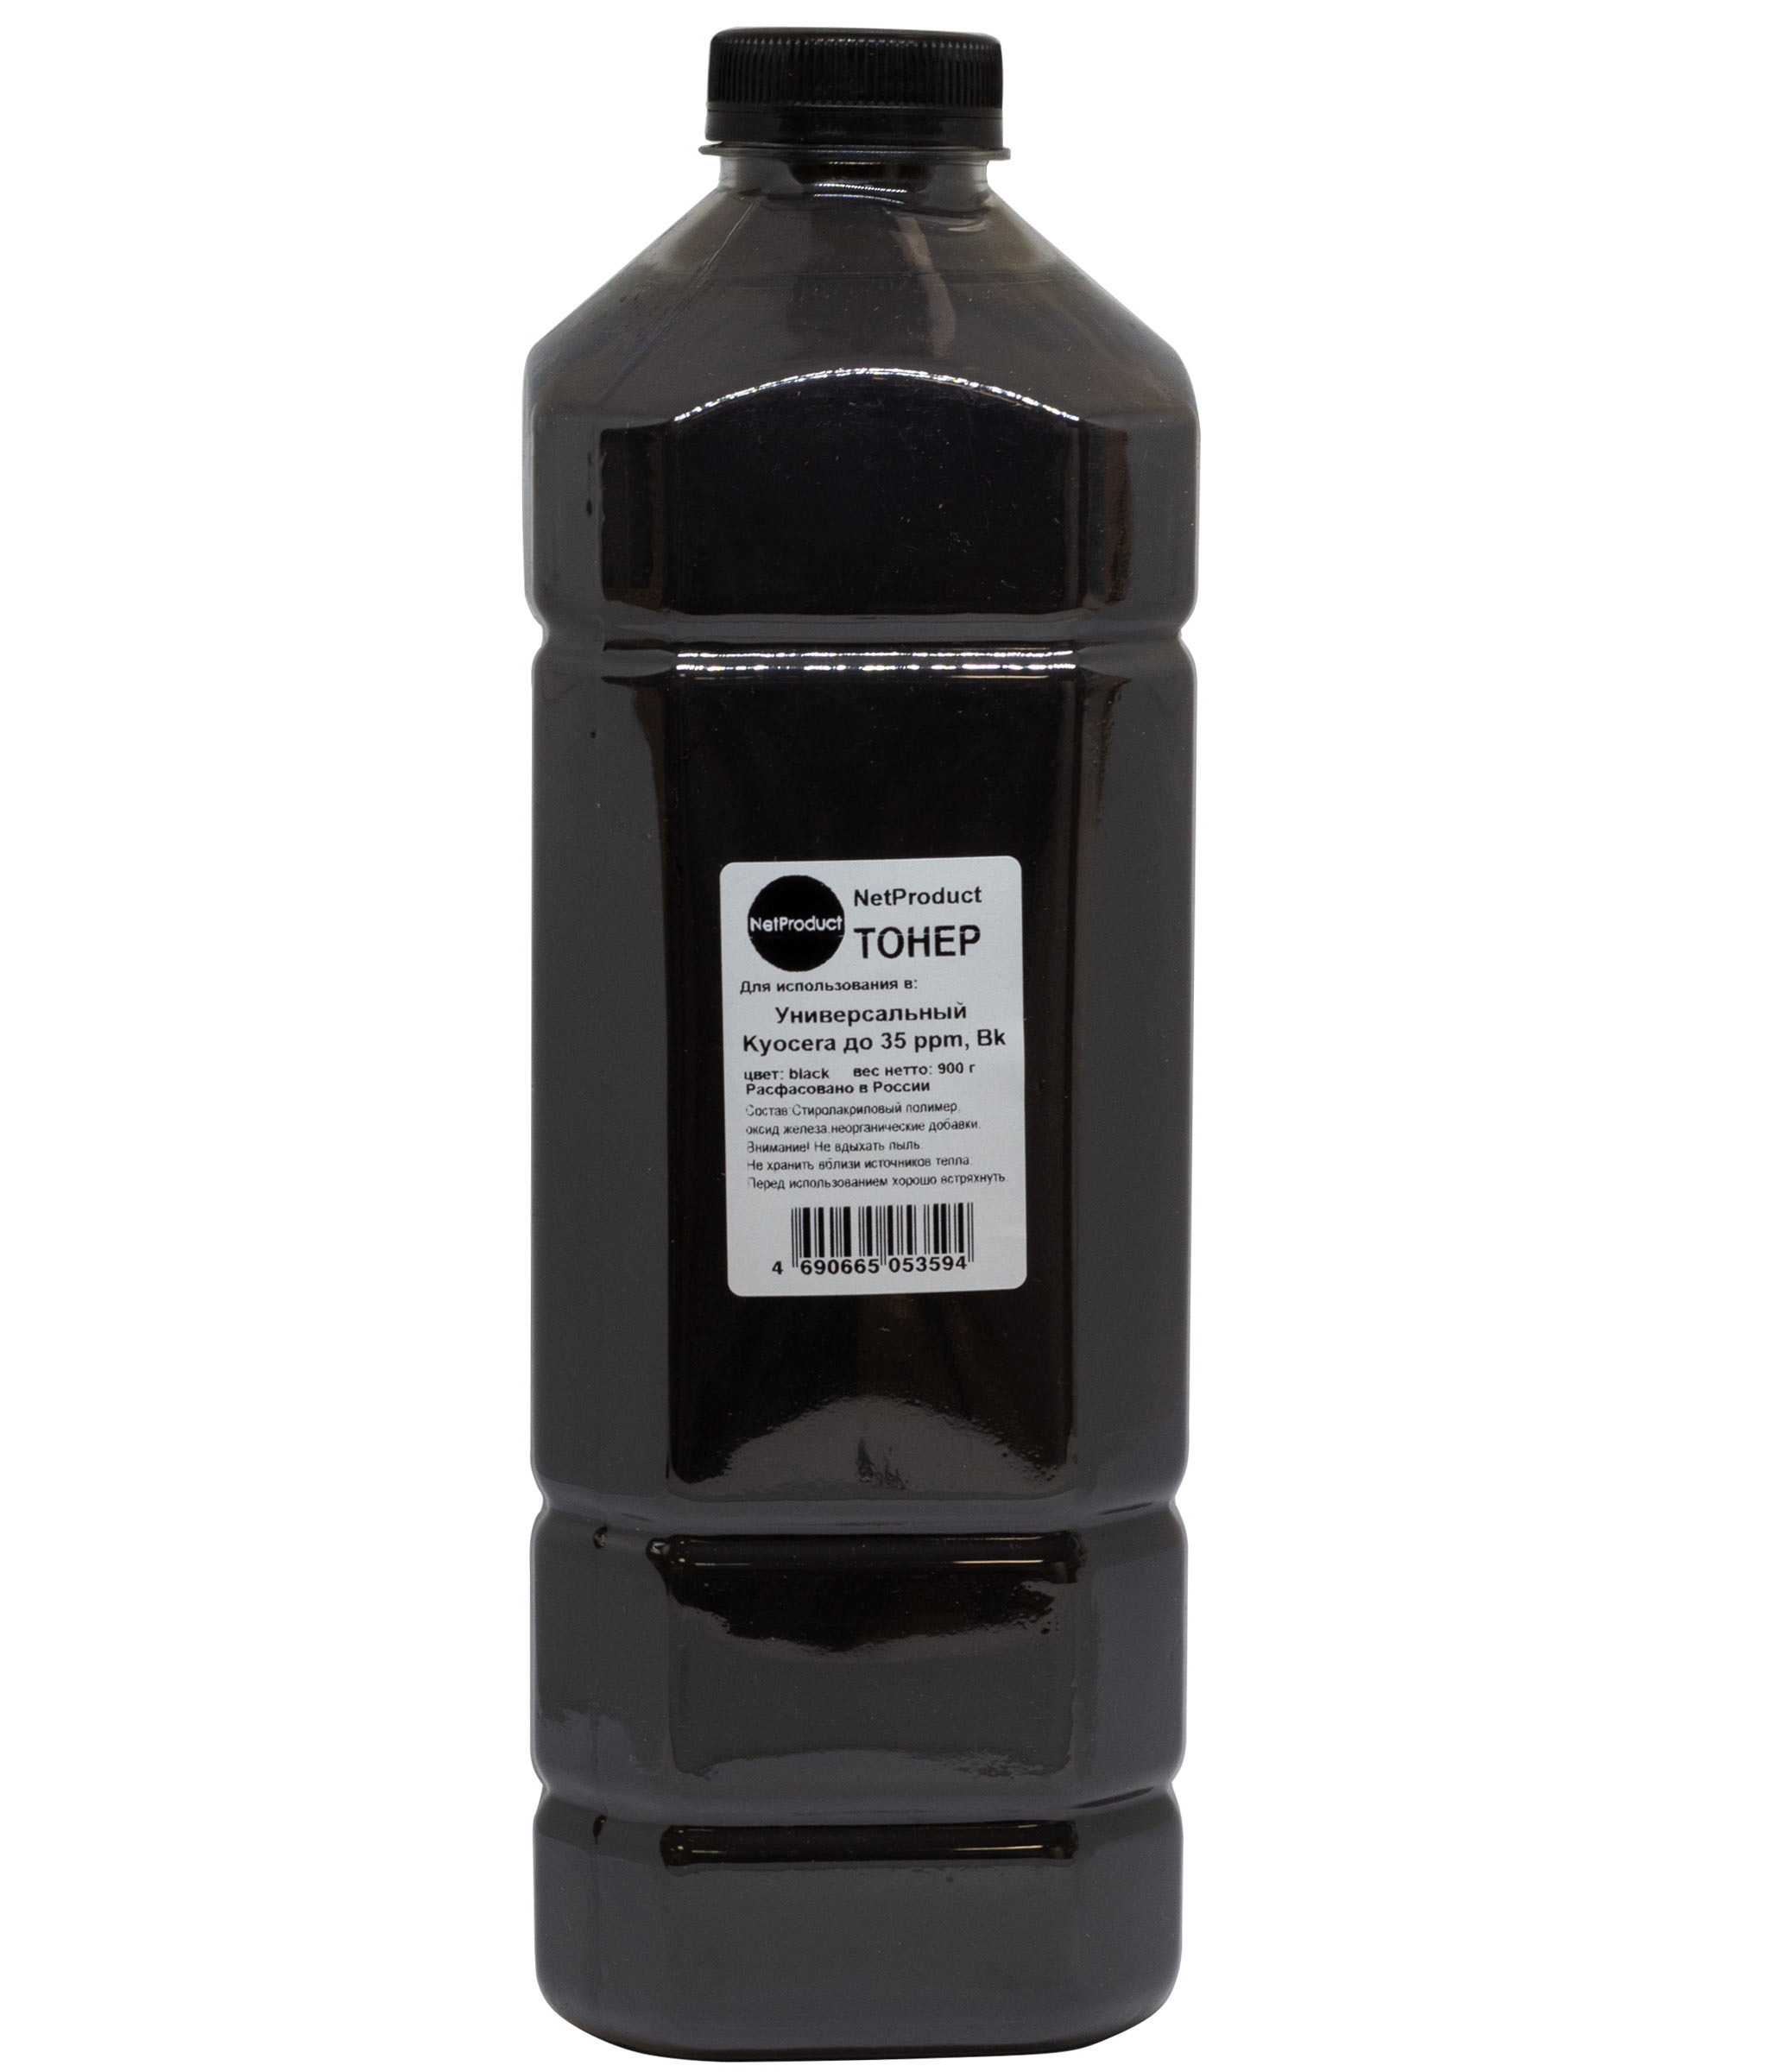 Тонер NetProduct универсальный, бутыль 900 г, черный, совместимый для Kyocera (980361402)